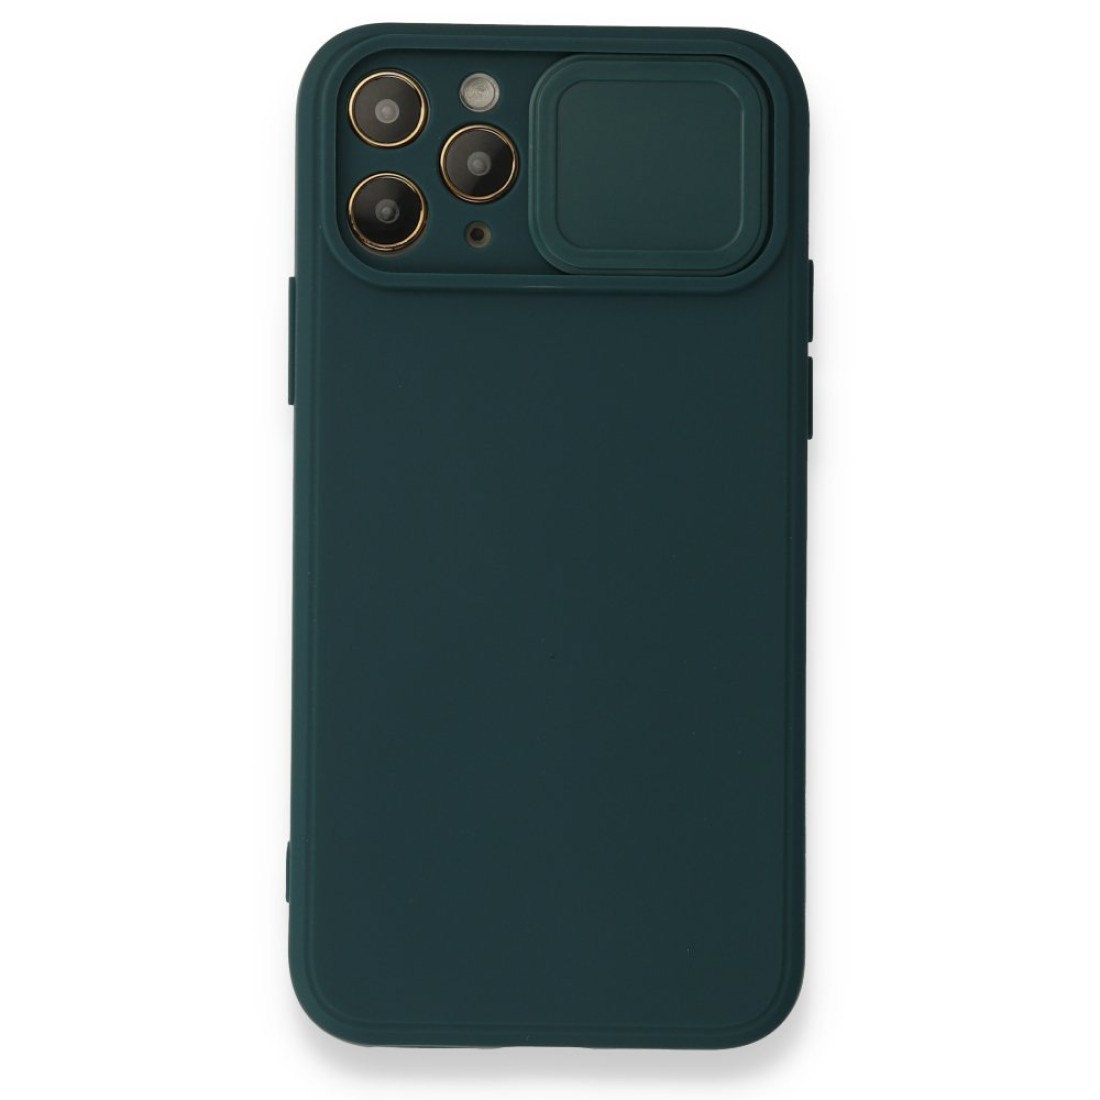 Apple iPhone 11 Pro Kılıf Color Lens Silikon - Yeşil